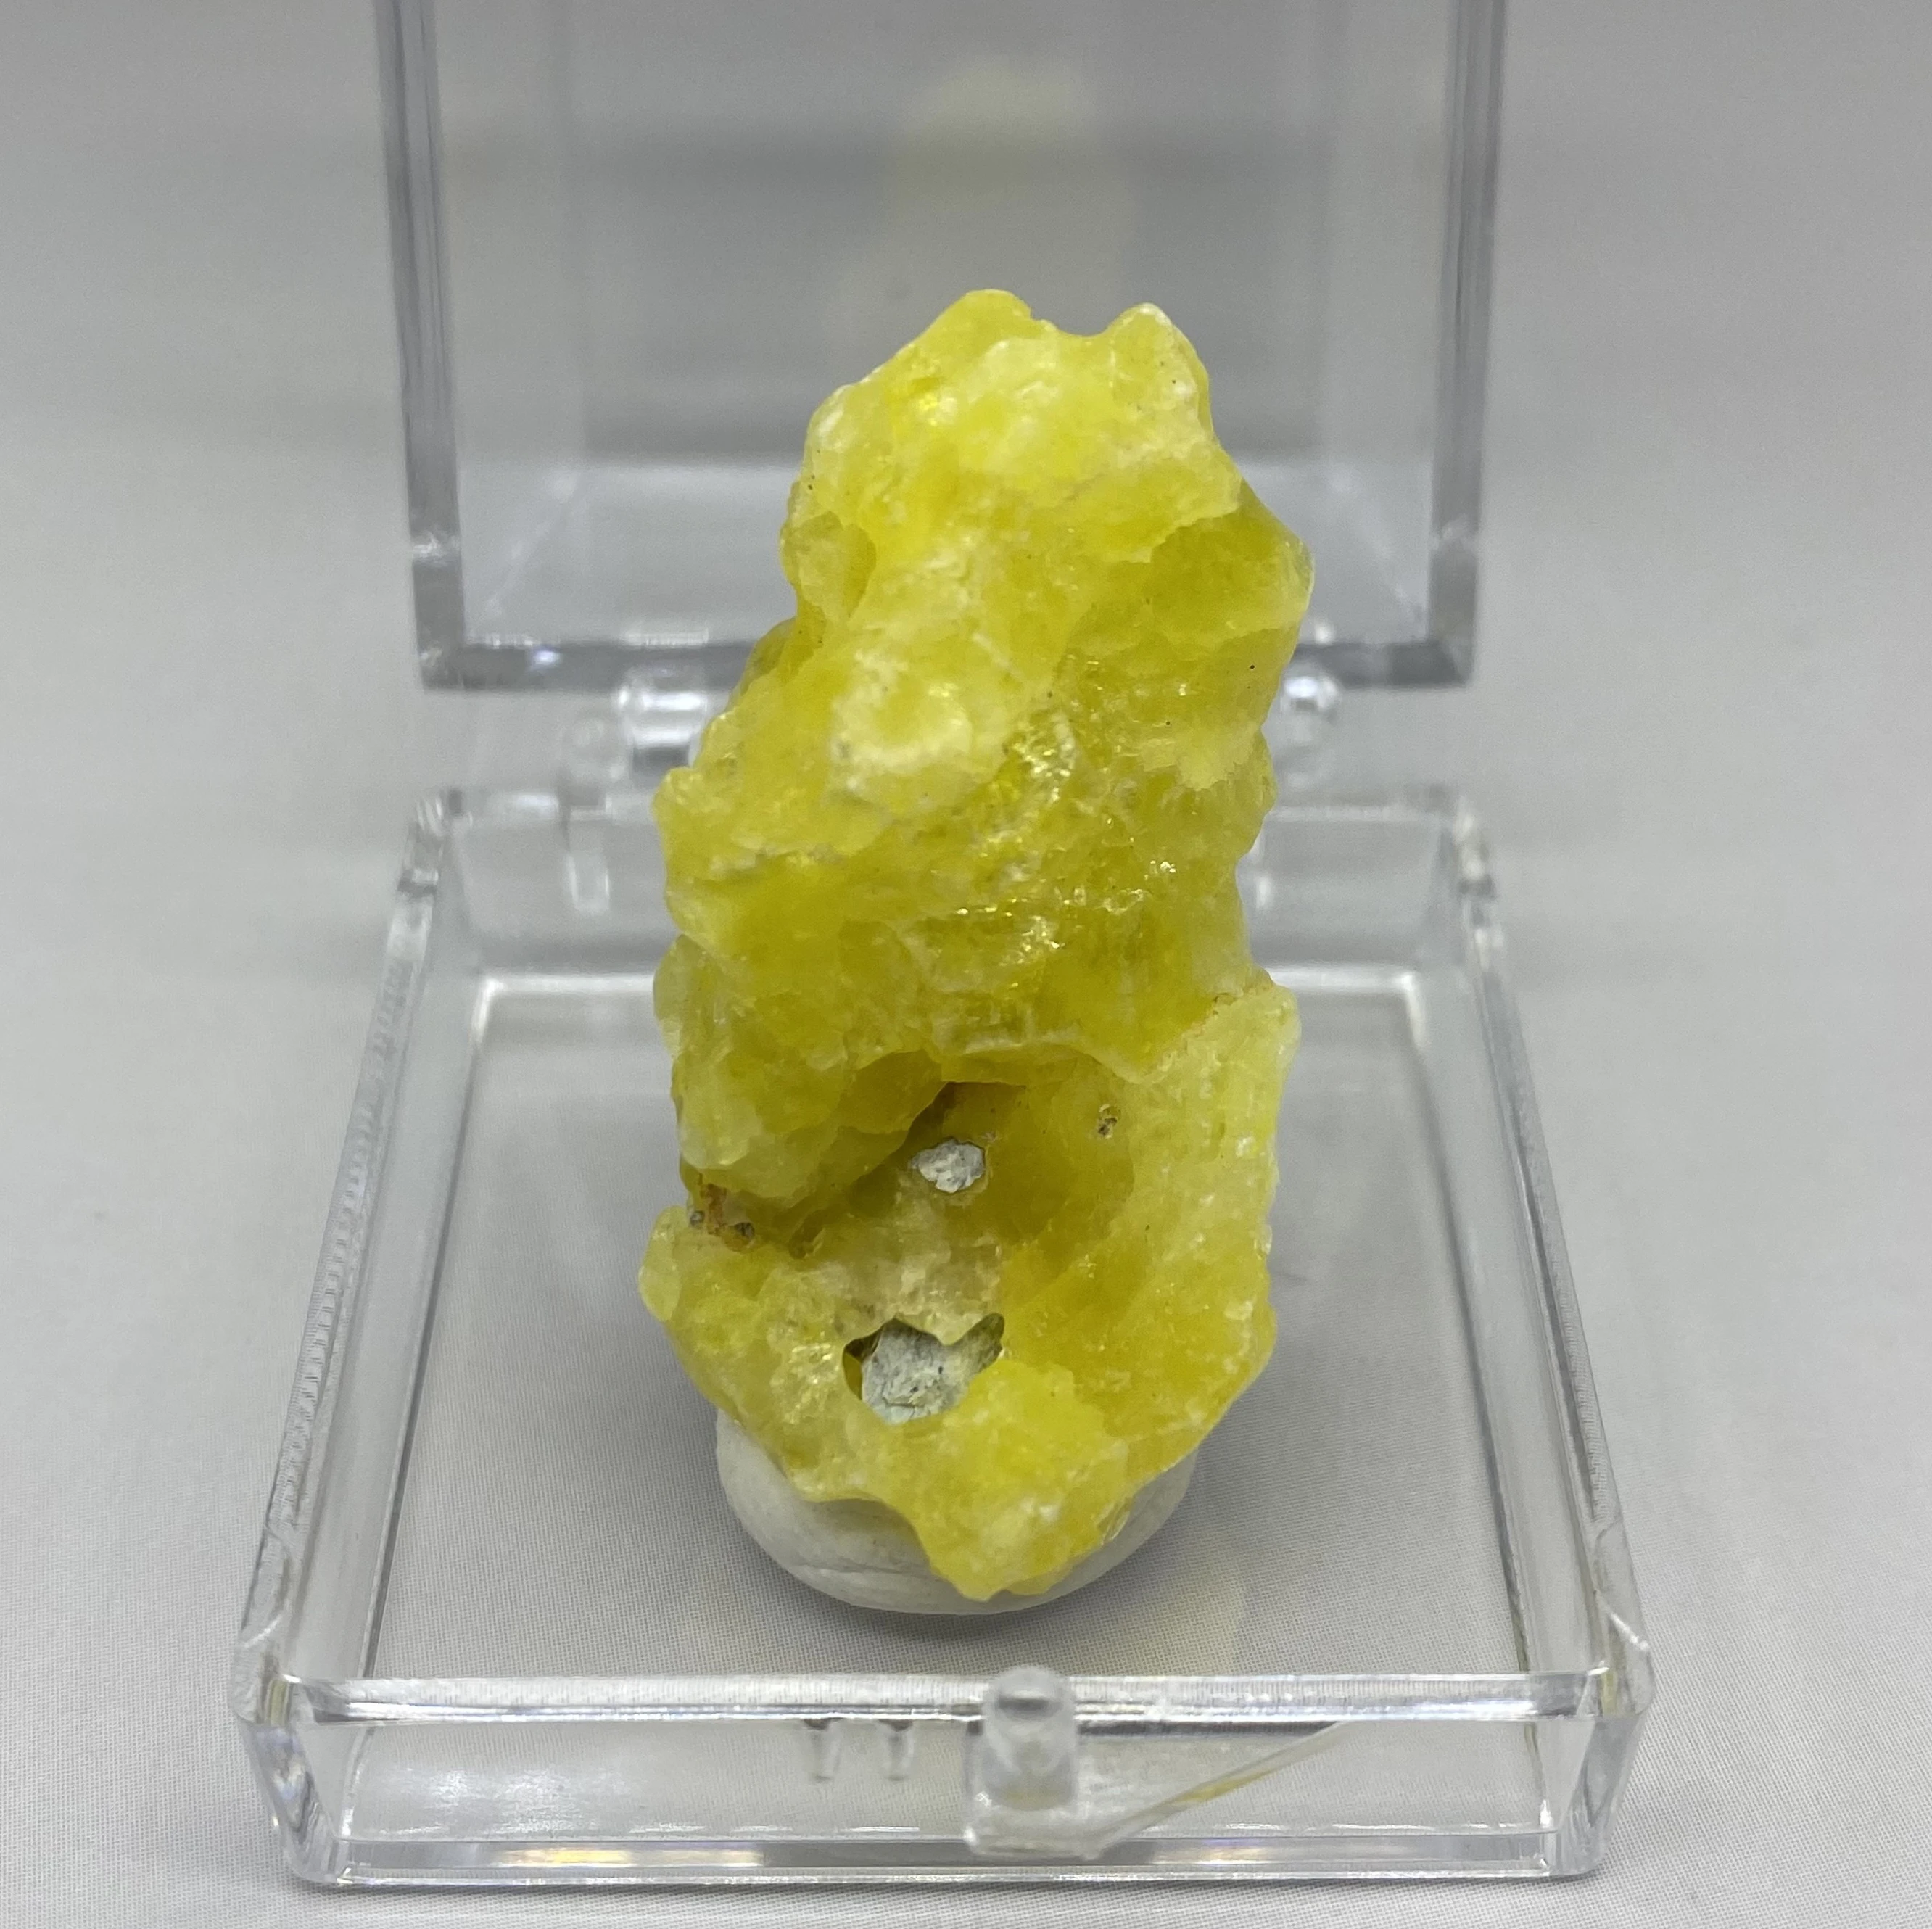 Nagyon Ritka! 100% - ban Természetes Pakisztán sárga Brucite Ásványi példány kövek, kristályok, gyógyító kristályok kvarc (doboz méret 3.4 cm)